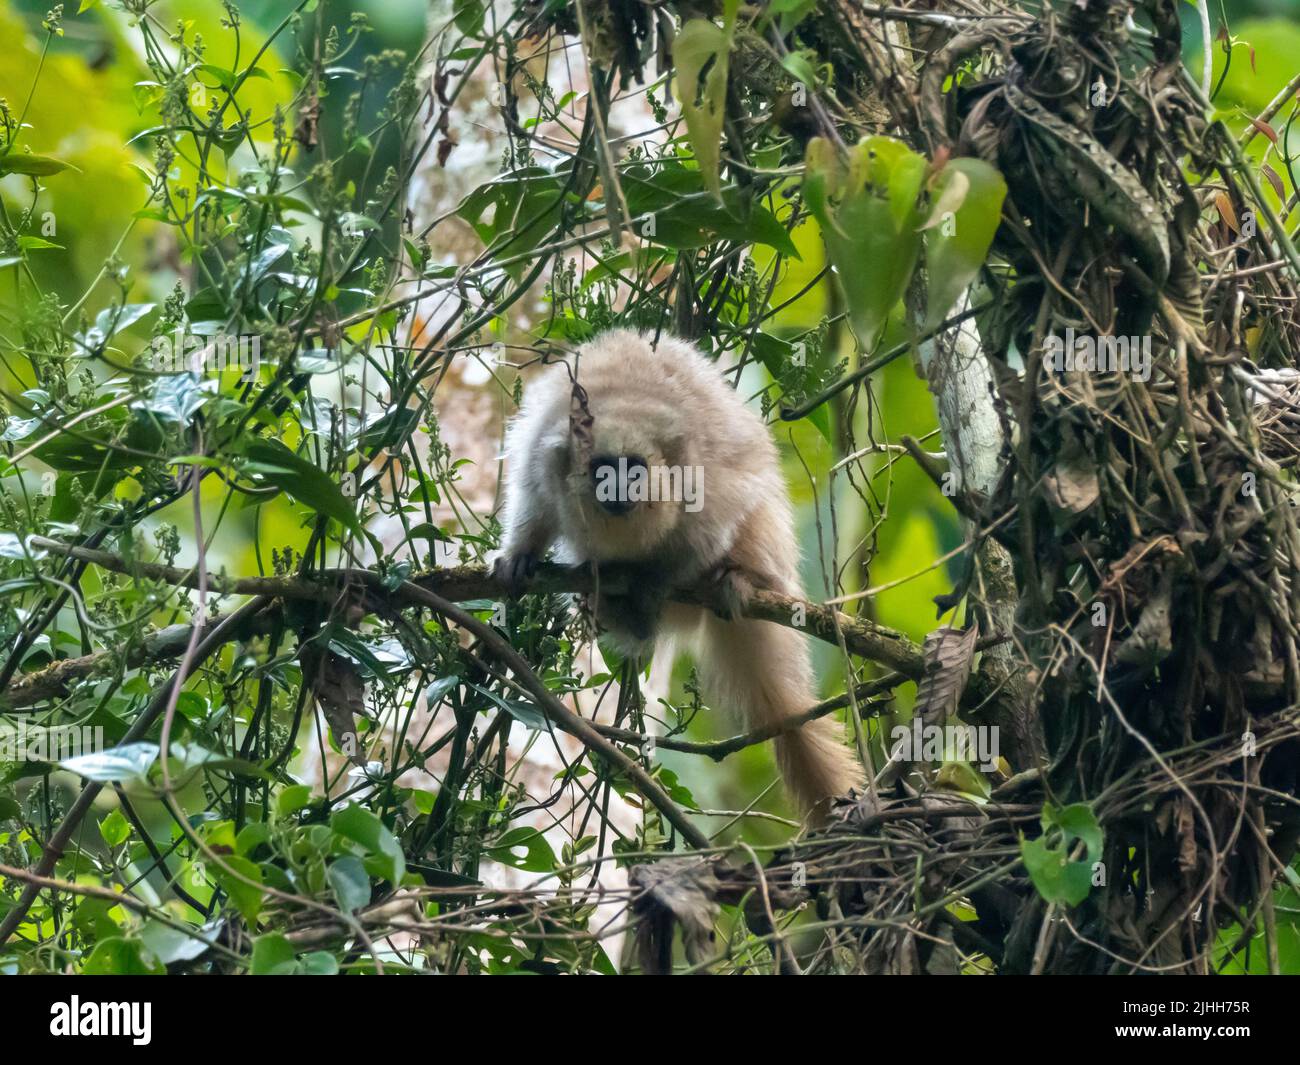 Rio Mayo Titi-Affe, Plecturocebus oenanthe, ein vom Aussterben bedrohter Primat, der endemisch im oberen Mayo-Fluss im Nordosten Perus ist Stockfoto